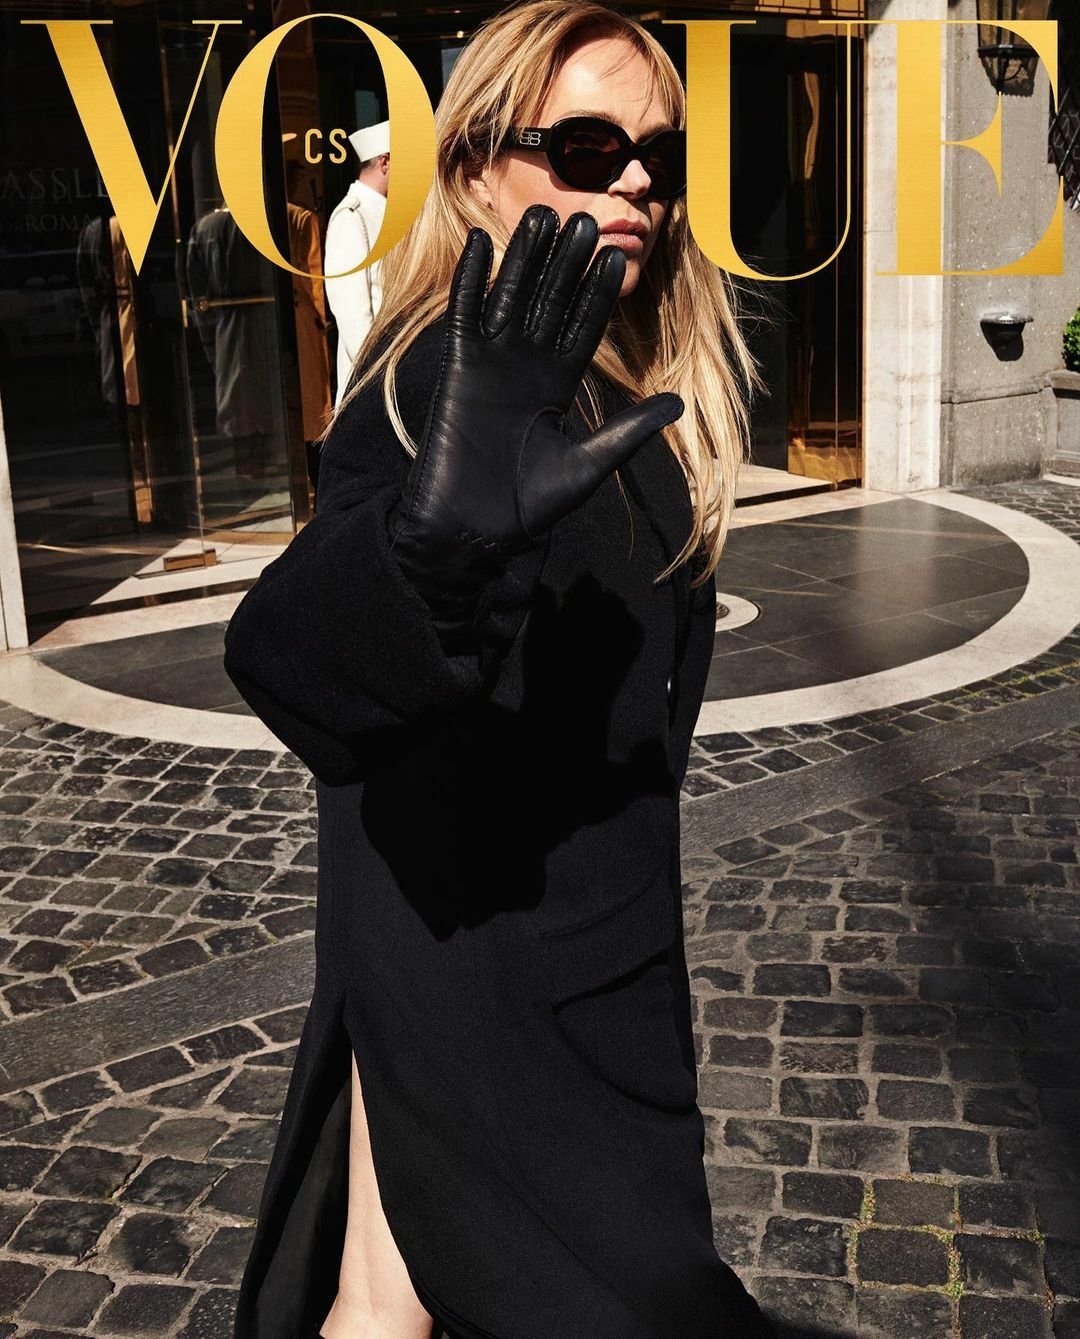 Třetí obálka červencového vydání Vogue CS je limitovaná, vlastnoručně podepsaná Dagmar Havlovou a 100 ks bude k dostání jen on-line. Takto ji popisuje redakce společenského časopisu.